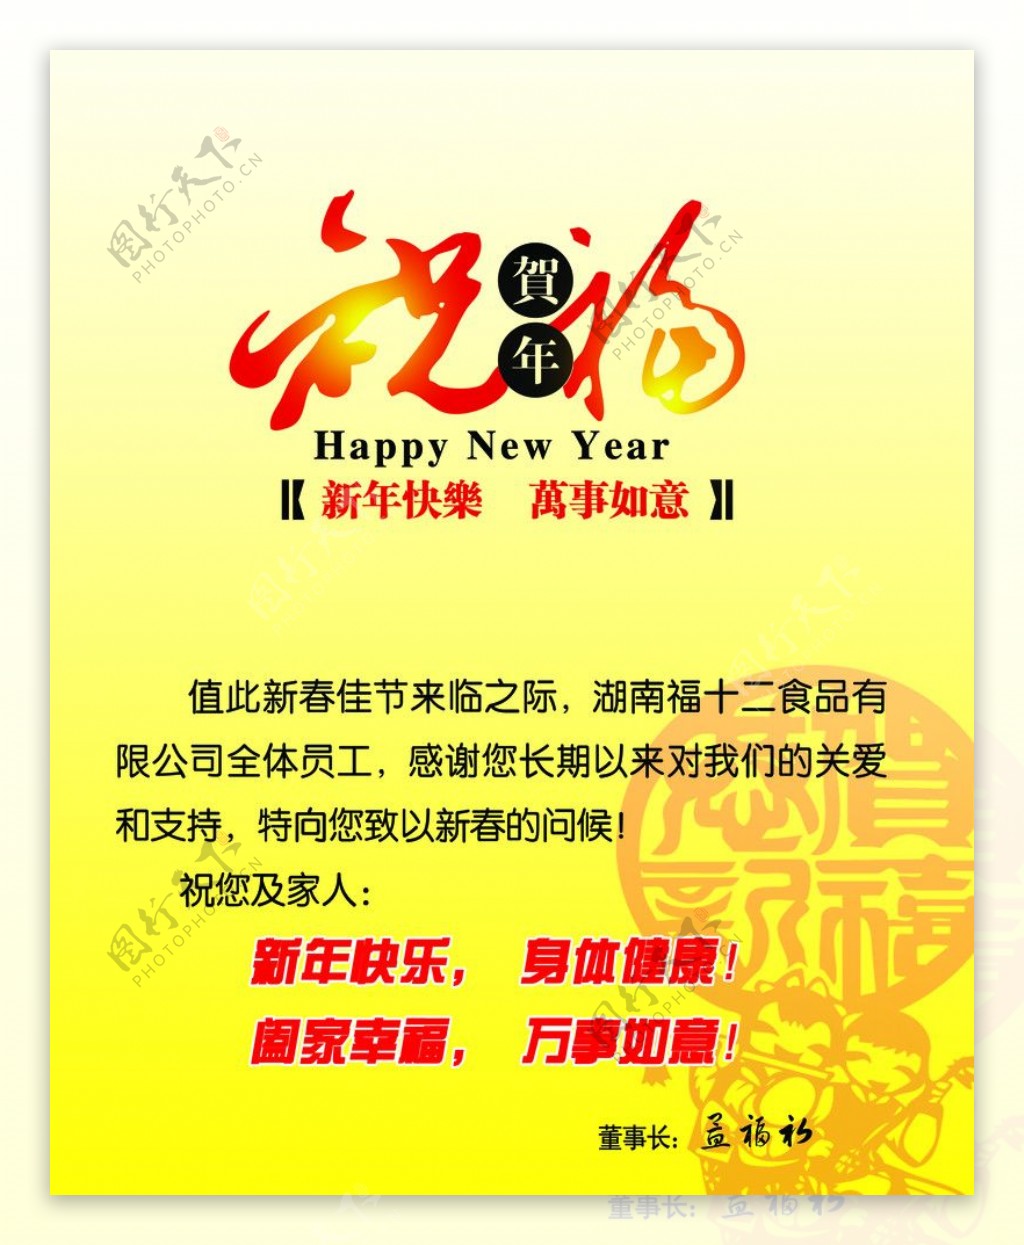 2012春节明信片图片